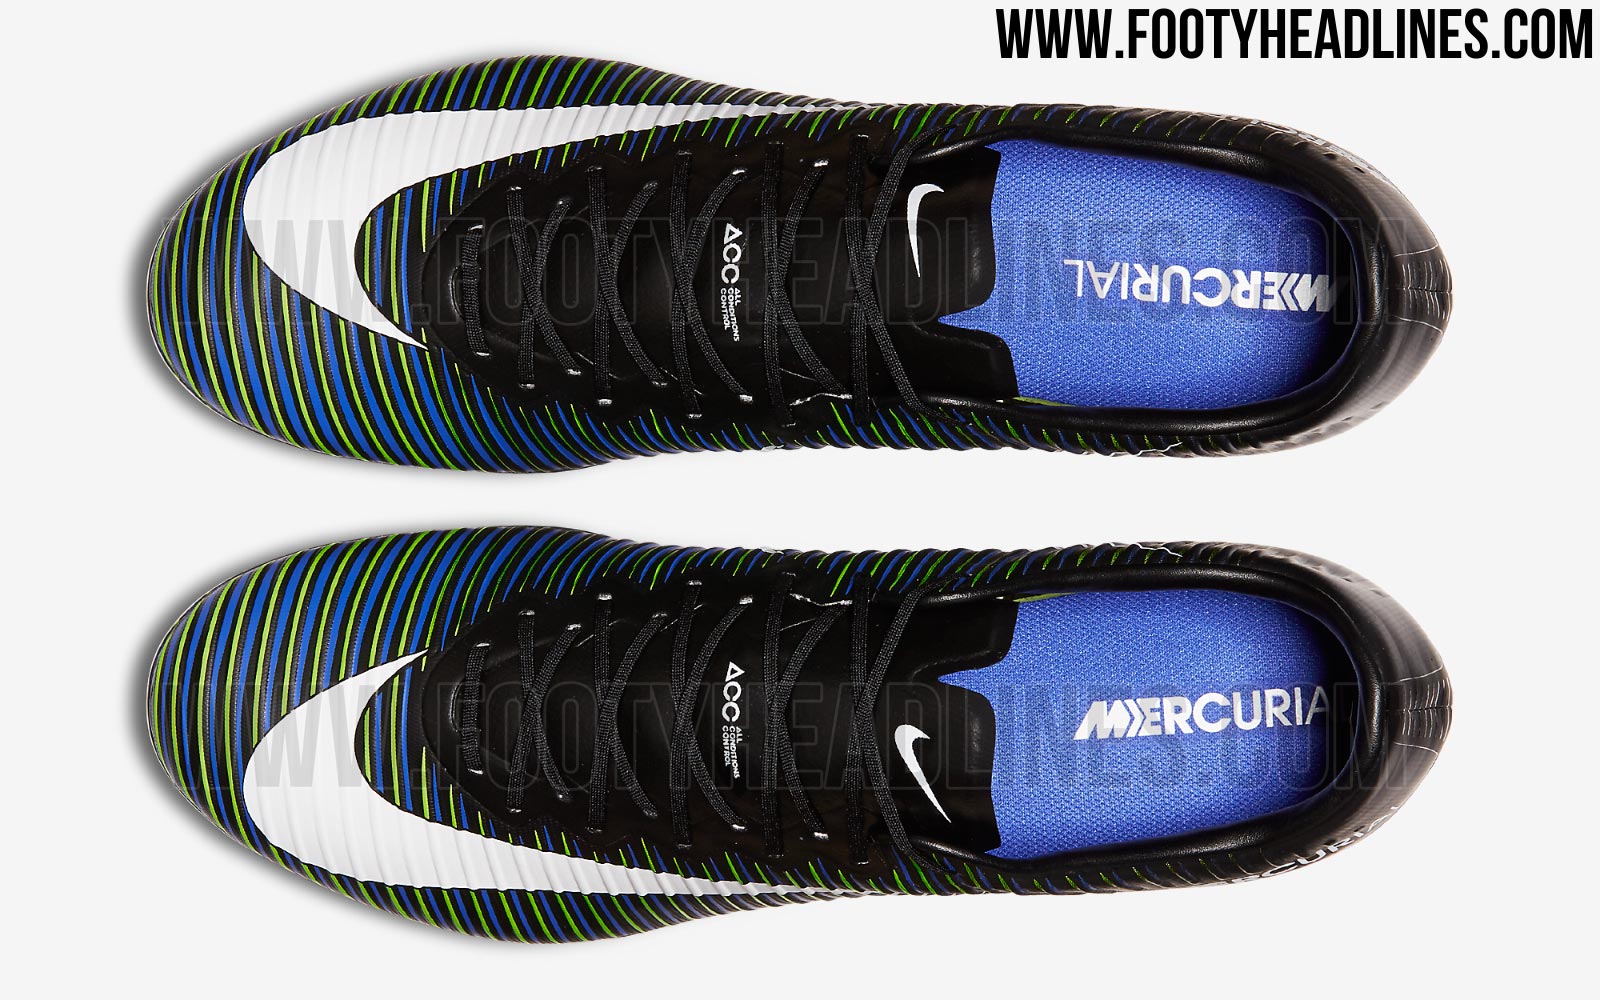 Black Nike Mercurial Vapor 11 Dark Boots Released - Footy Headlines